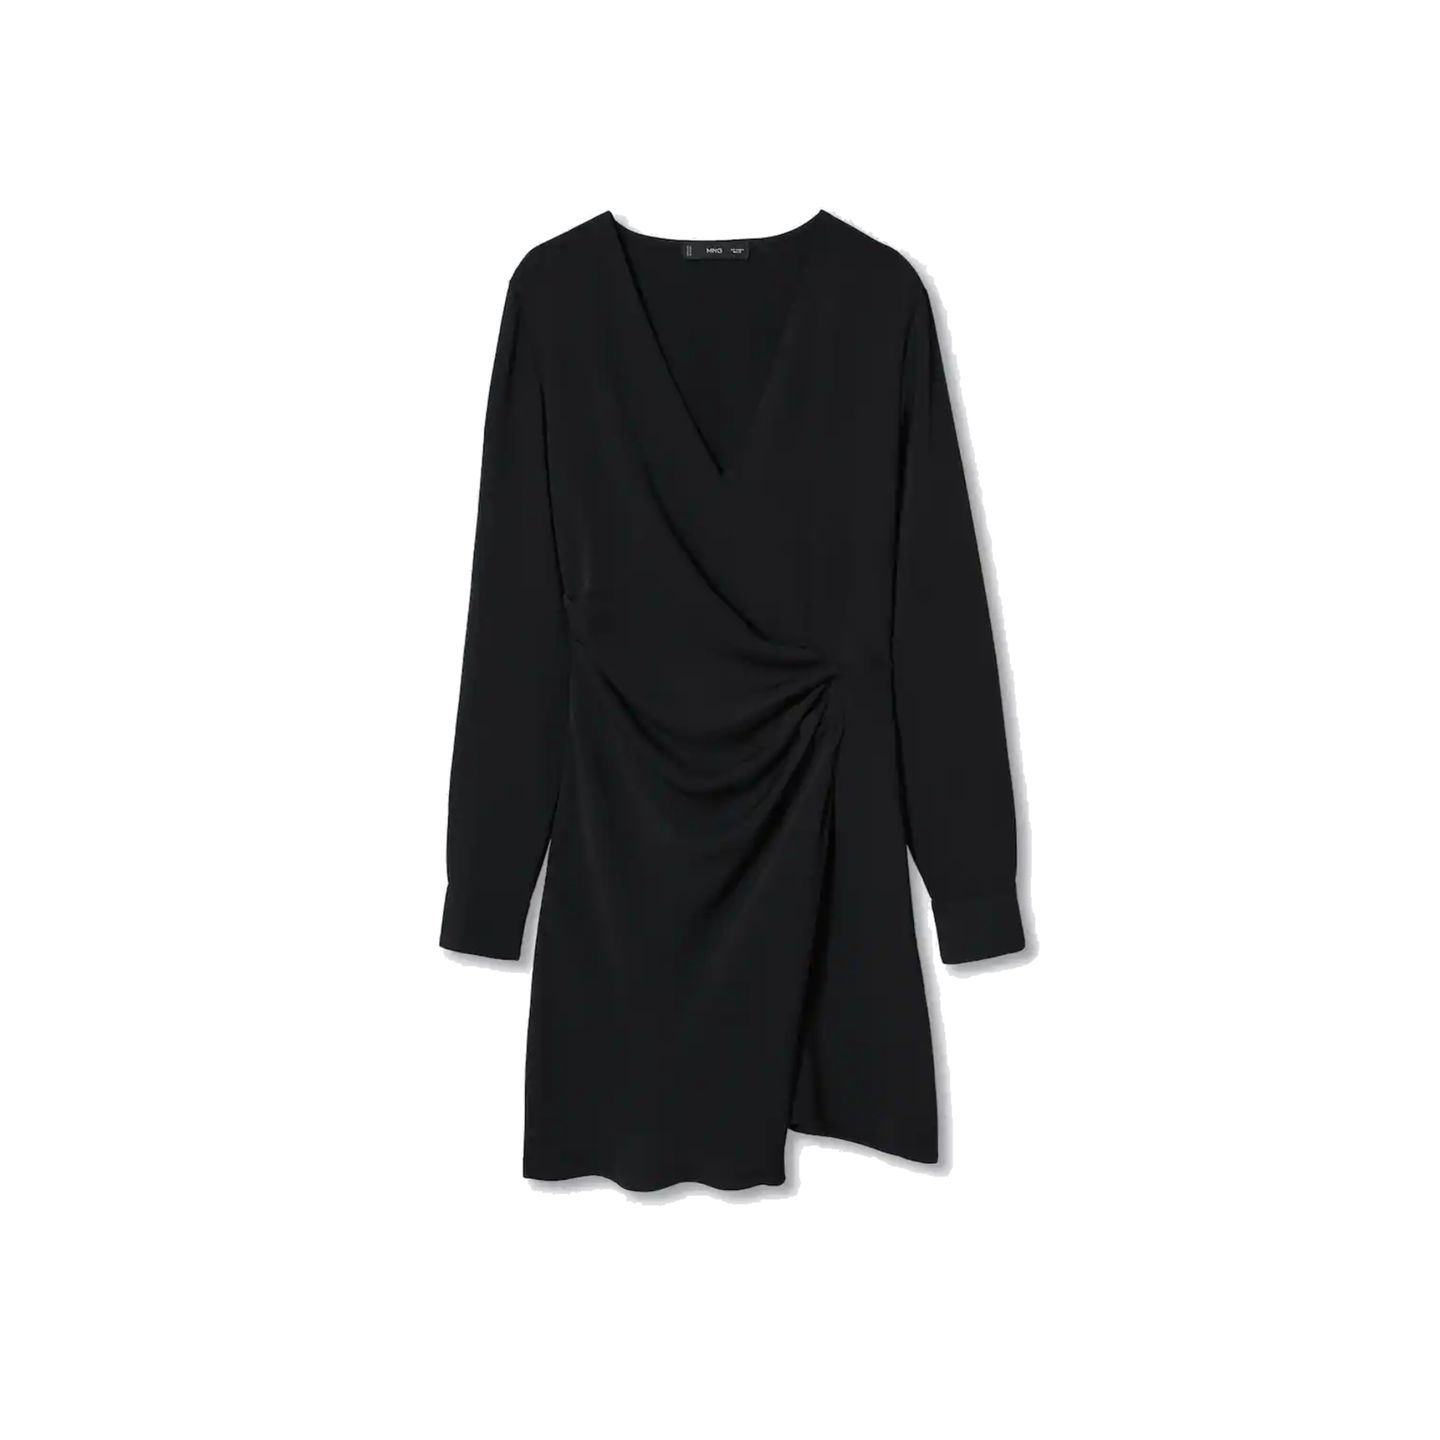 Der Klassiker für jeden Kleiderschrank! Das schwarze Kleid mit drapiertem Detail von Mango kaschiert an den richtigen Stellen und kann mit Strumpfhose und Mantel auch super im Winter getragen werden. Das Kleid gibt es auch in grünem Paisley-Muster für rund 40 Euro.